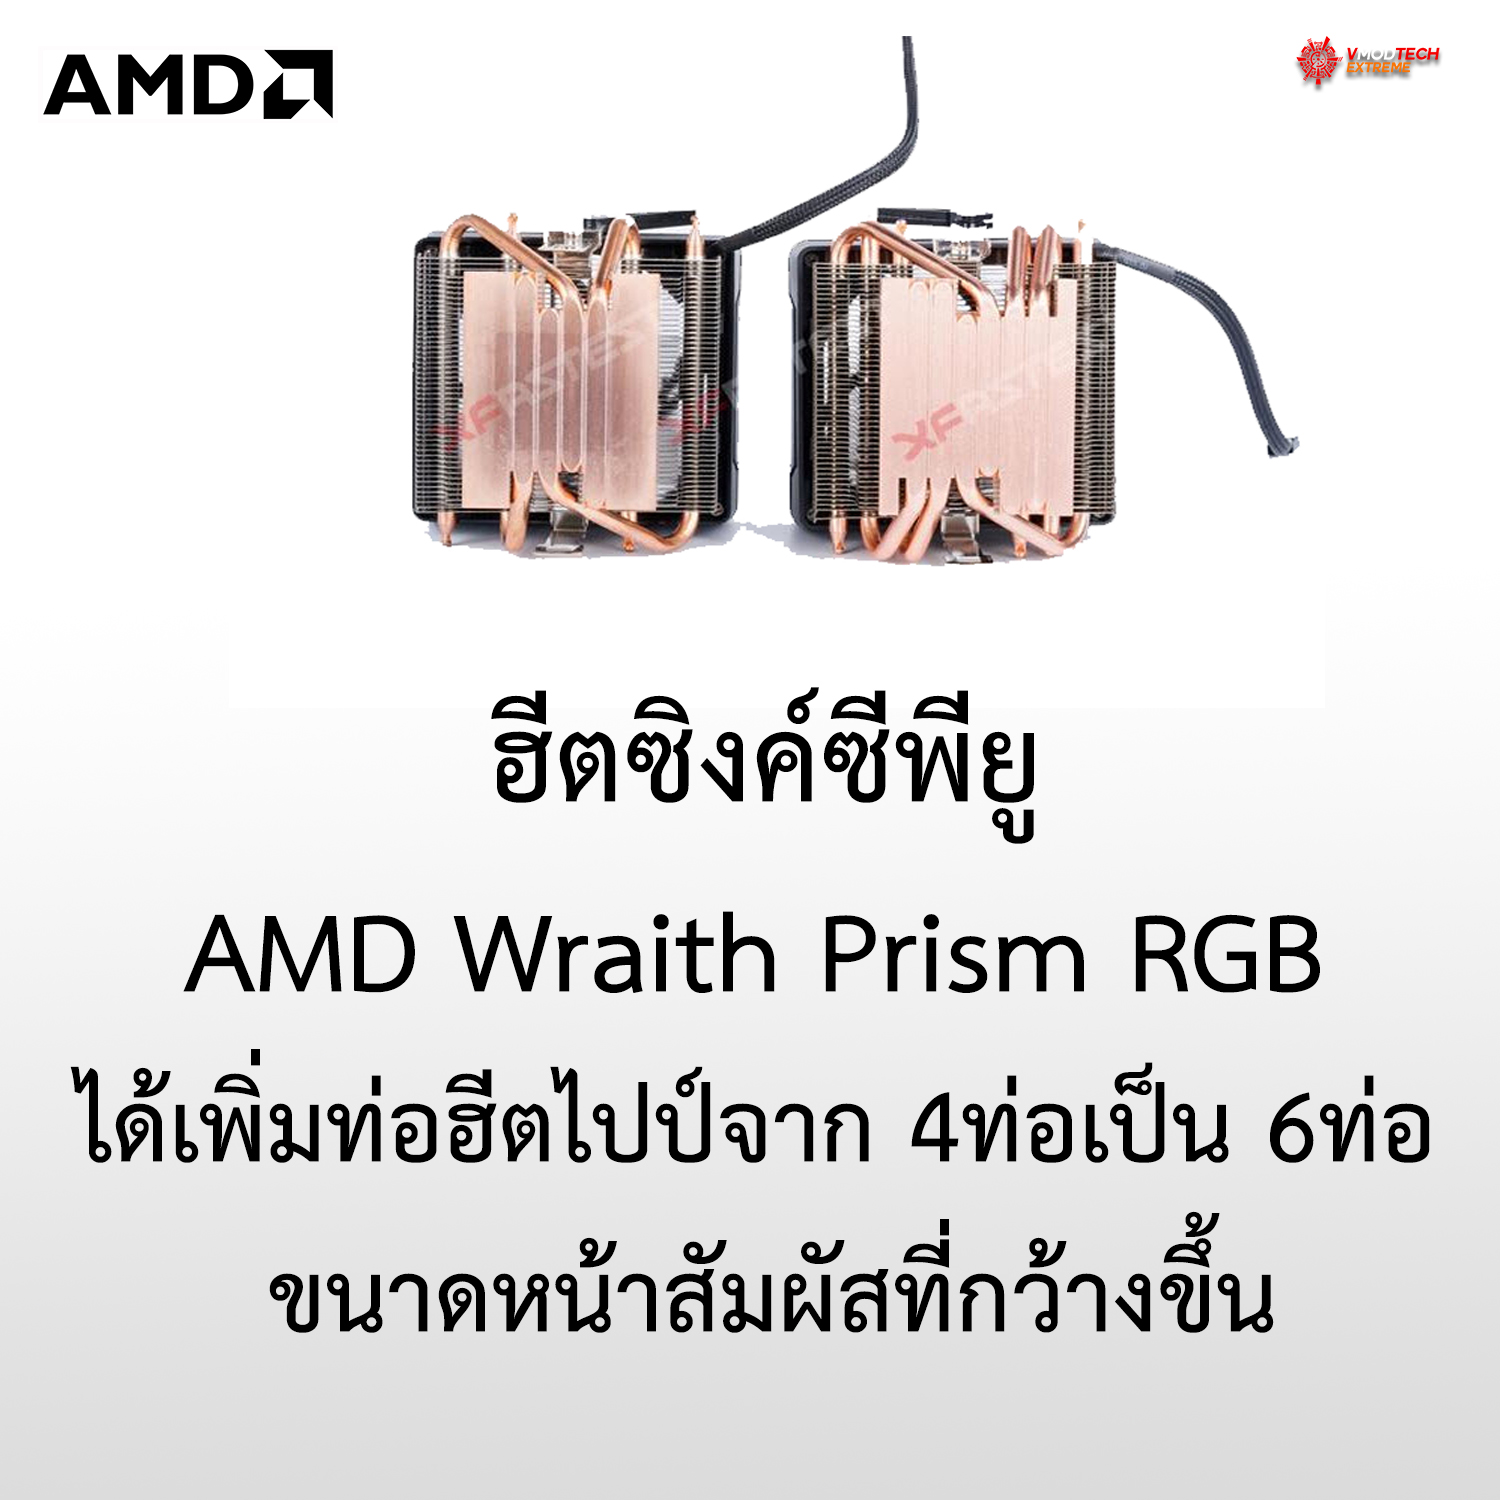 ฮีตซิงค์ AMD Wraith Prism RGB ได้เพิ่มท่อฮีตไปป์จาก 4ท่อเป็น 6ท่อ ขนาดหน้าสัมผัสที่กว้างขึ้น